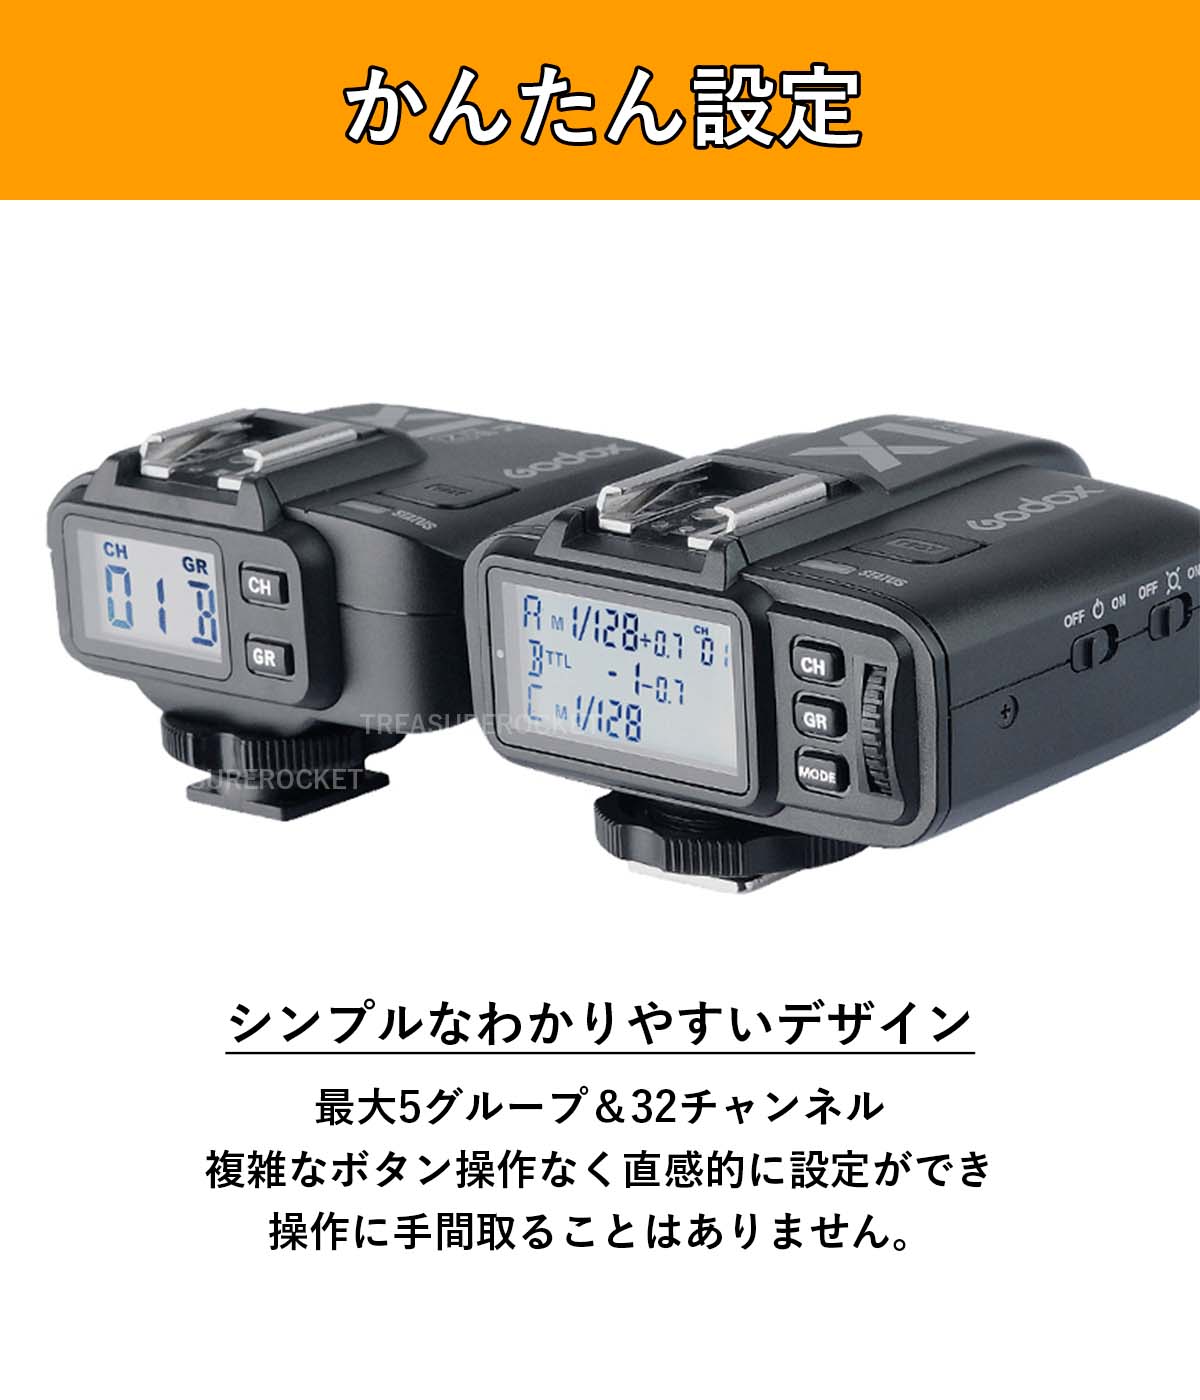 日本正規代理店 Godox X1R-S X1 ワイヤレス 受信機 レシーバー Sony ...